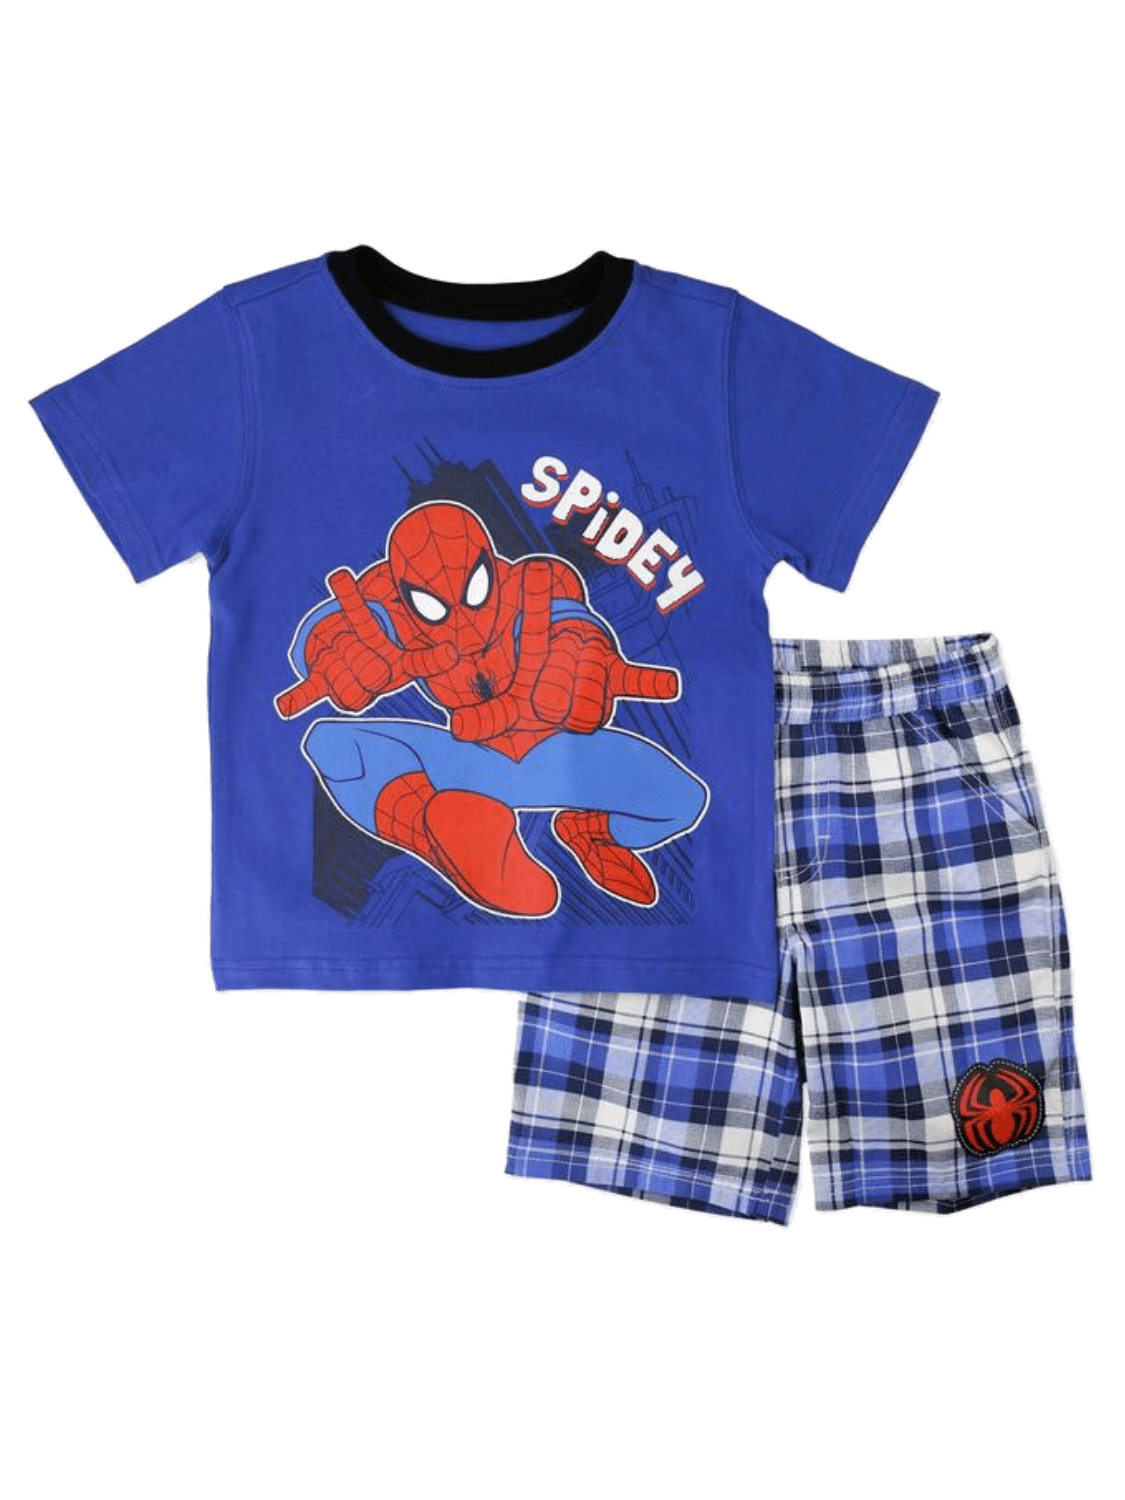 Spider-Man Infant Boys Blue & Multi Color 2pc Short Set Size 12M 18M 24M 